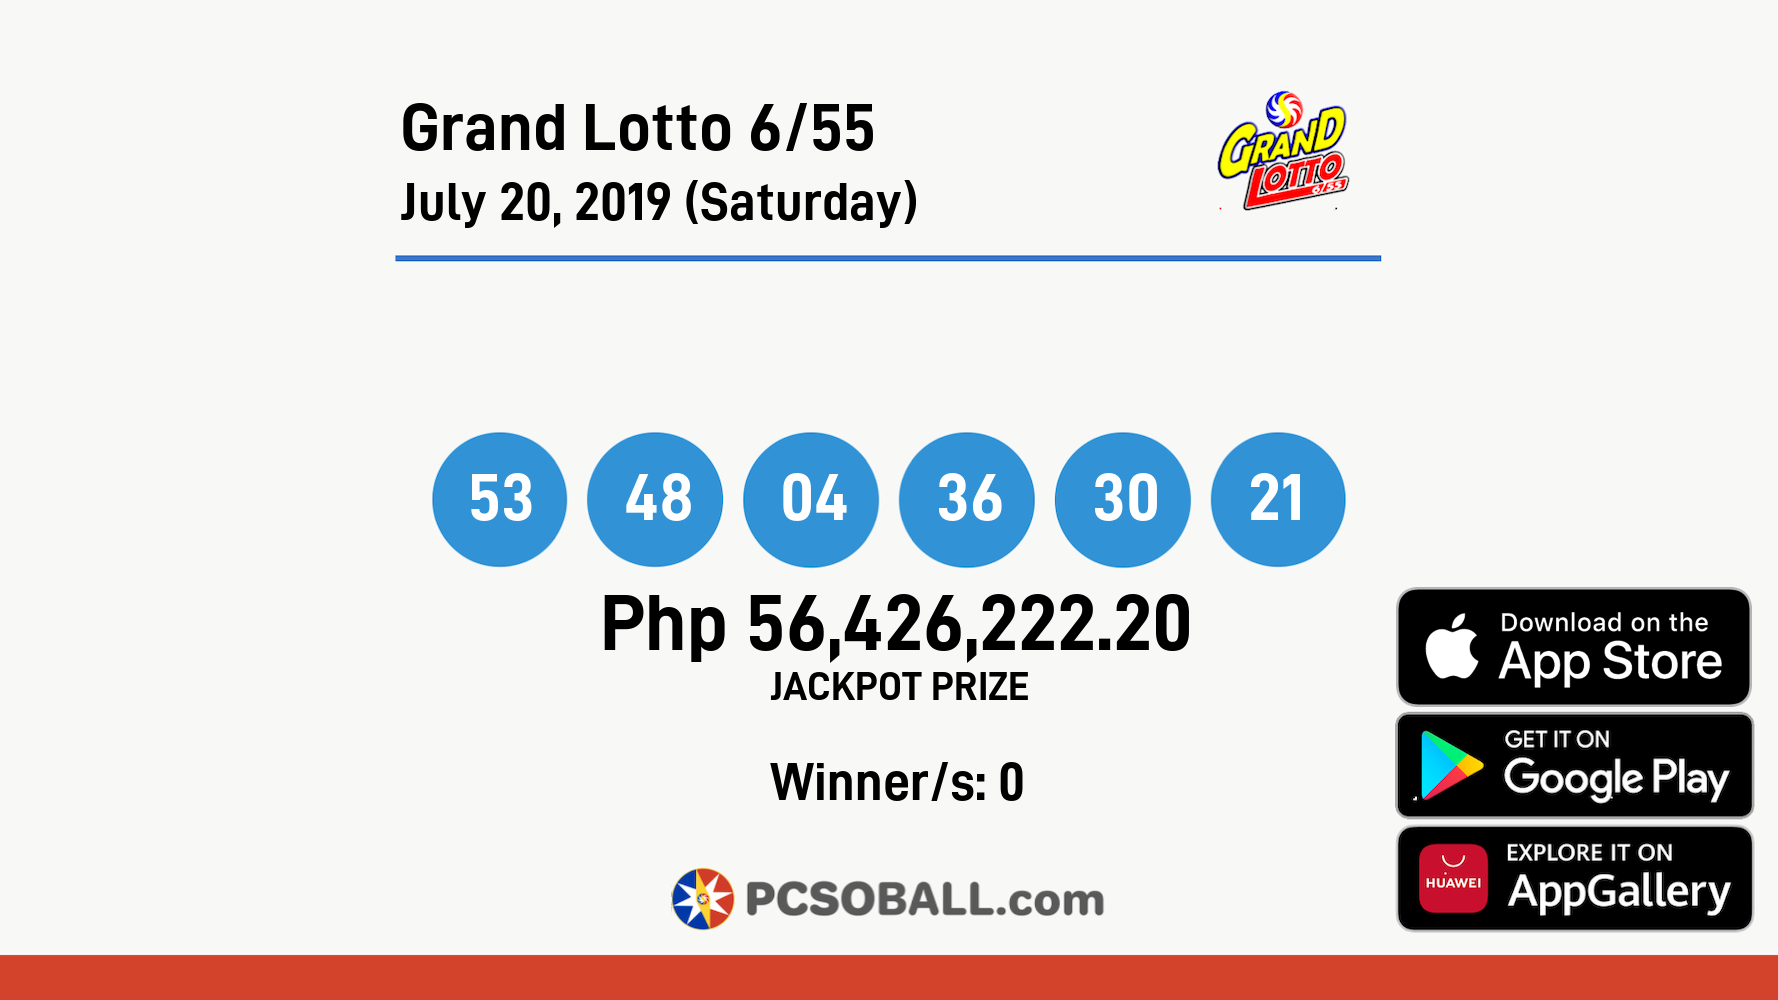 Grand Lotto 6/55 July 20, 2019 (Saturday) Result